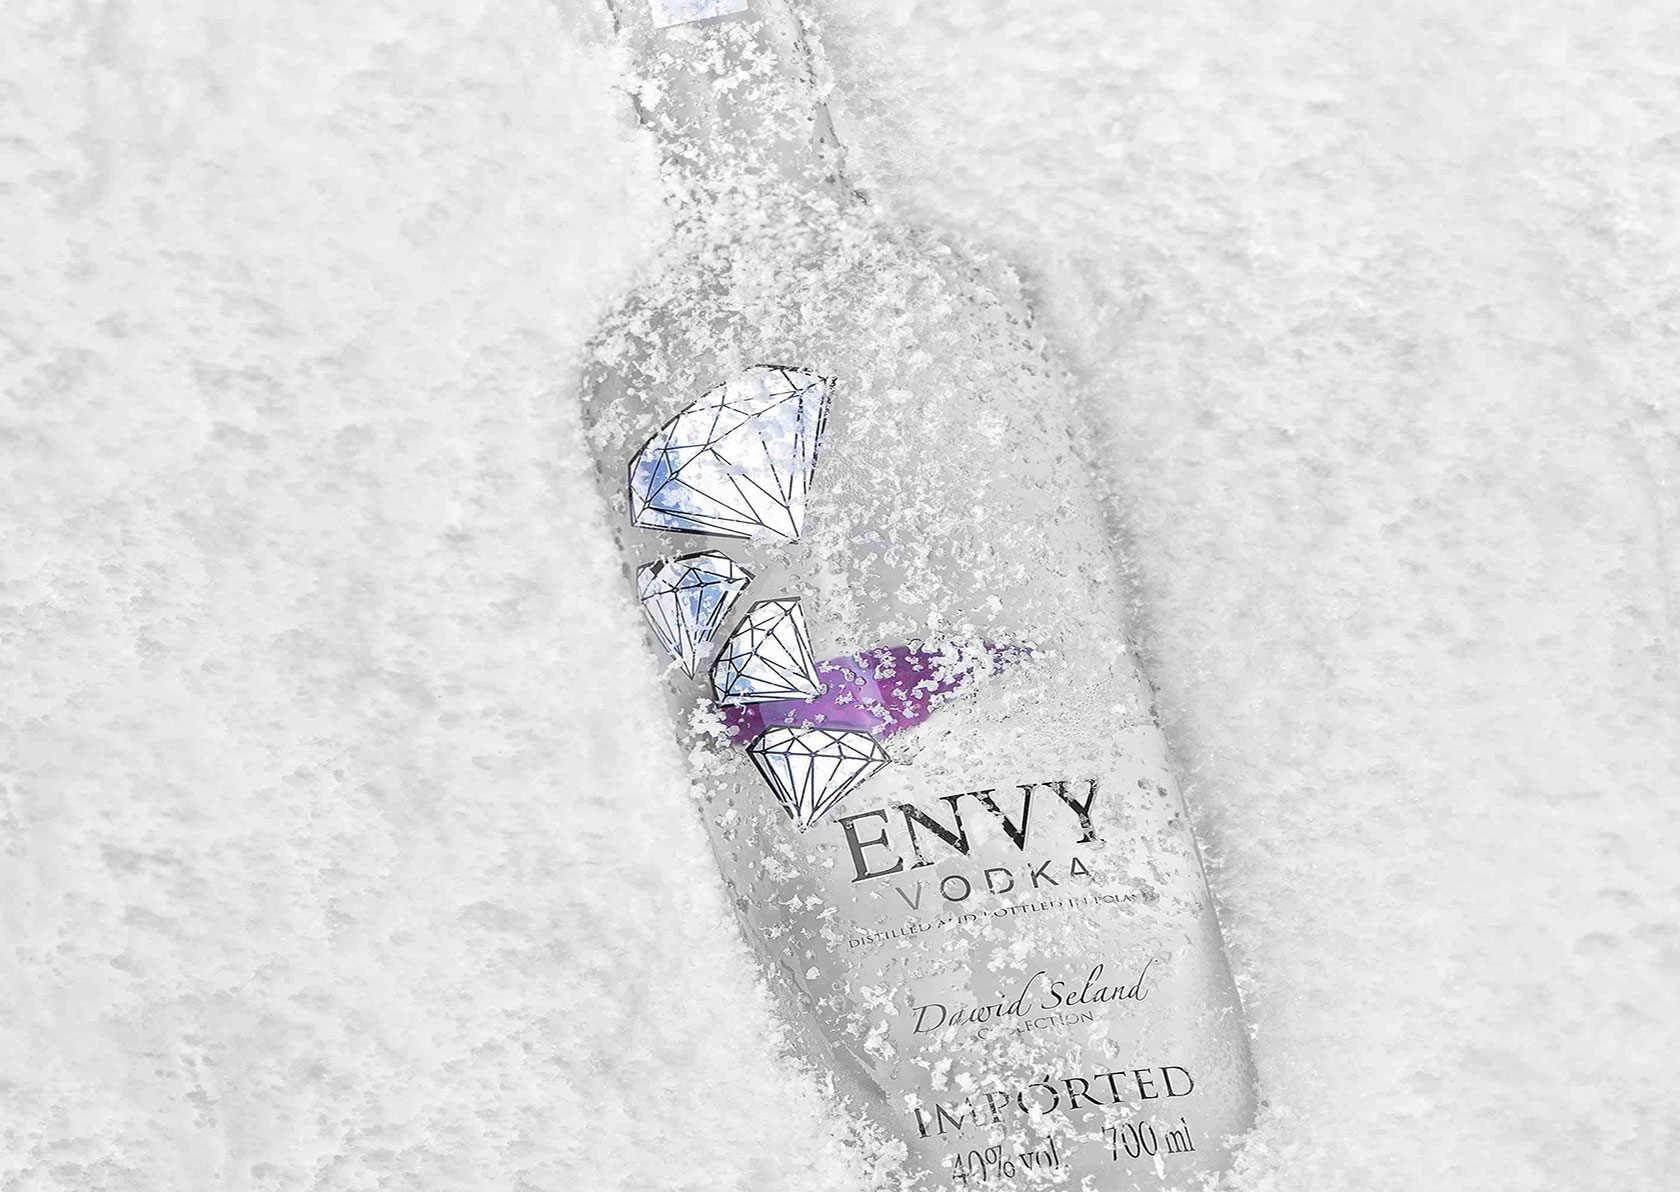 Envy Vodka